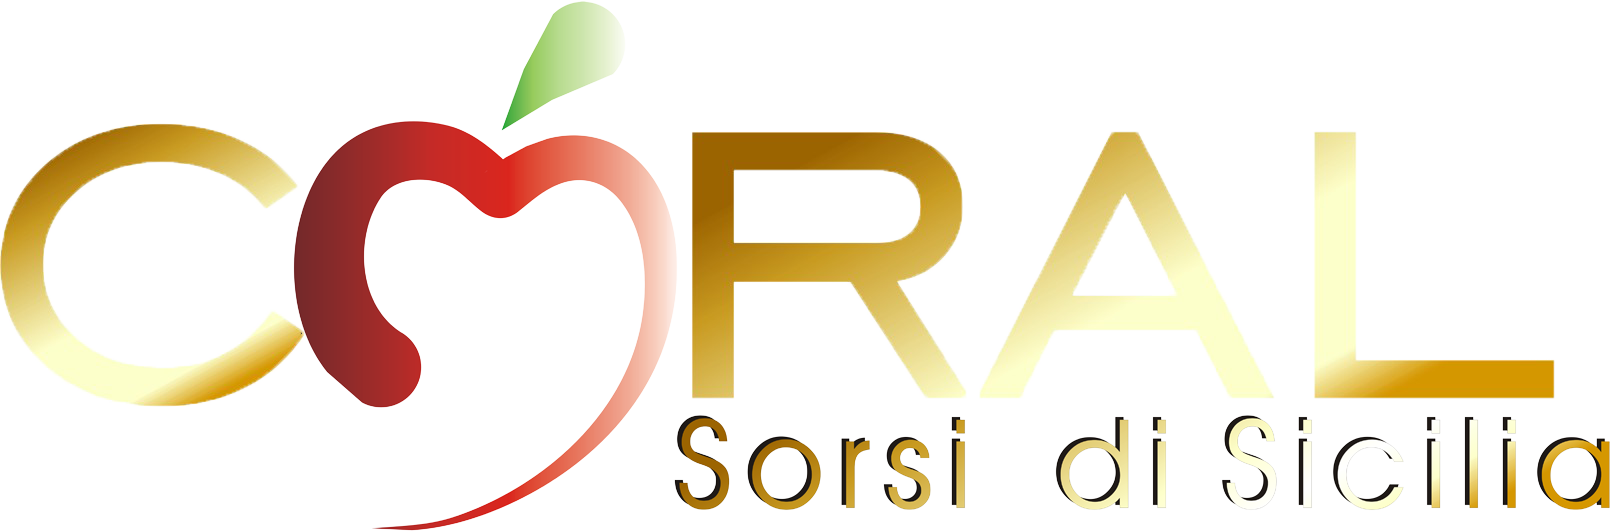 Coral Sorsi di Sicilia logo